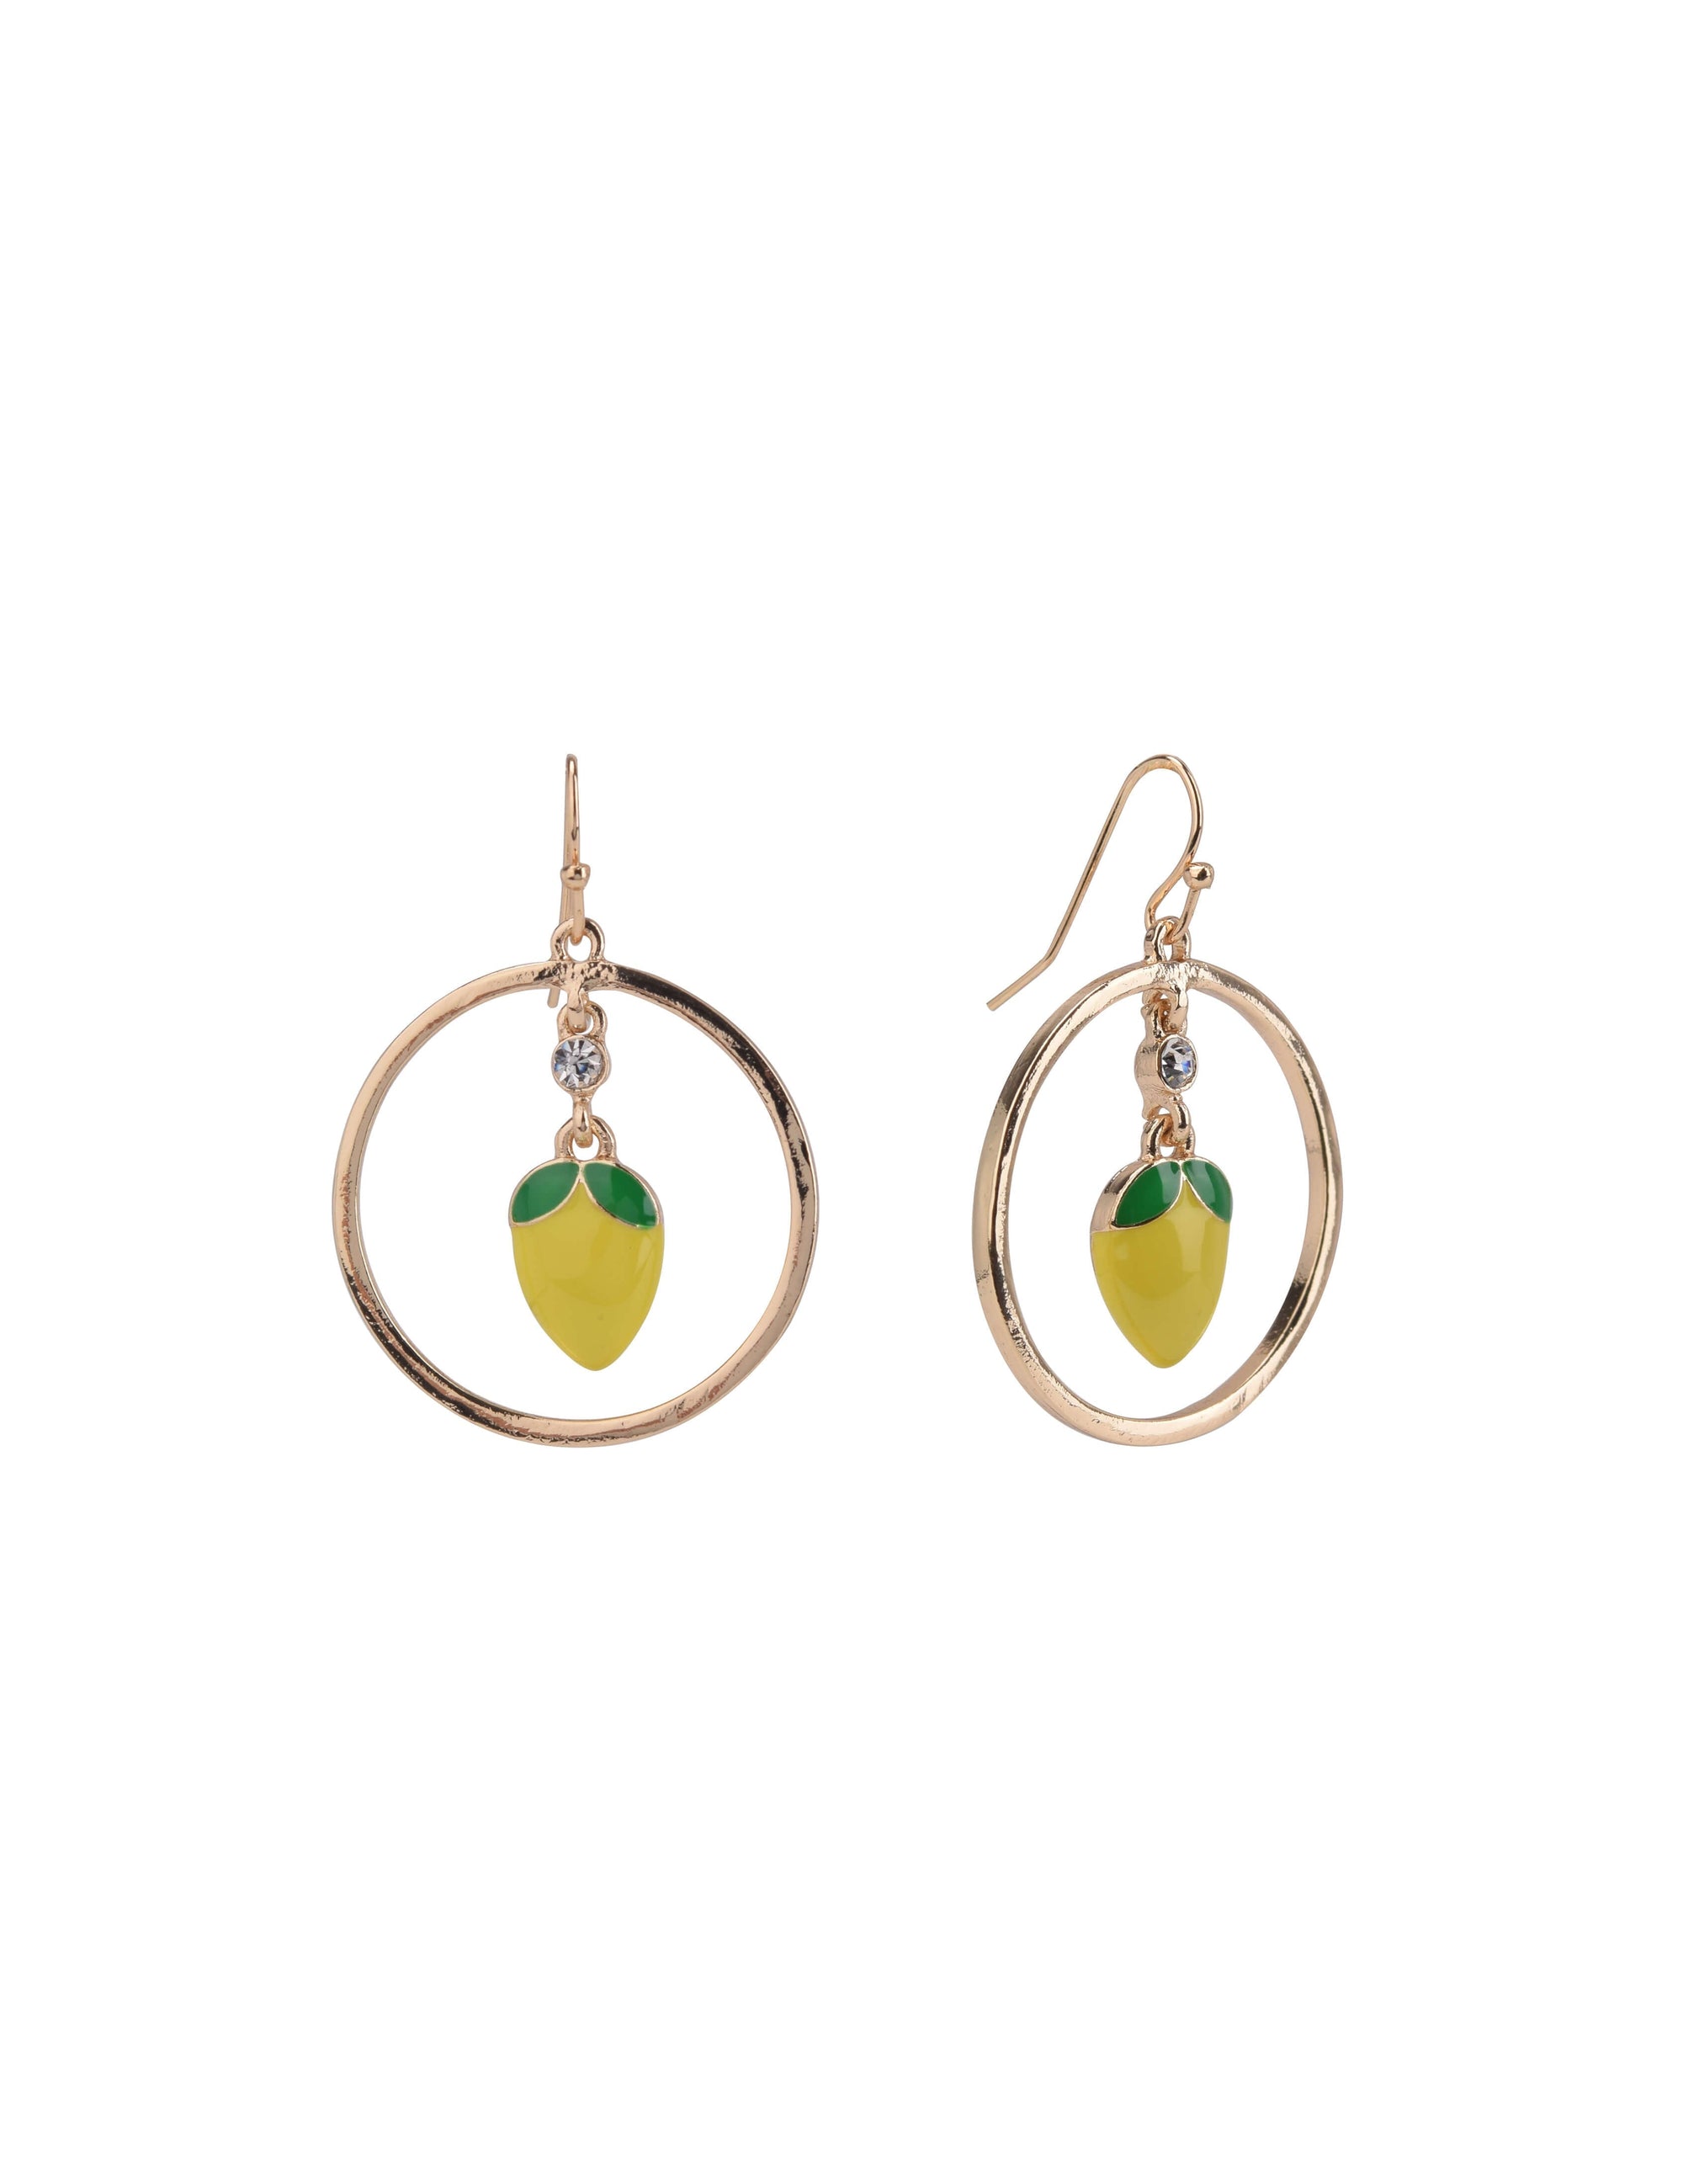 Gold Tone Ring Earrings with Lemon Center